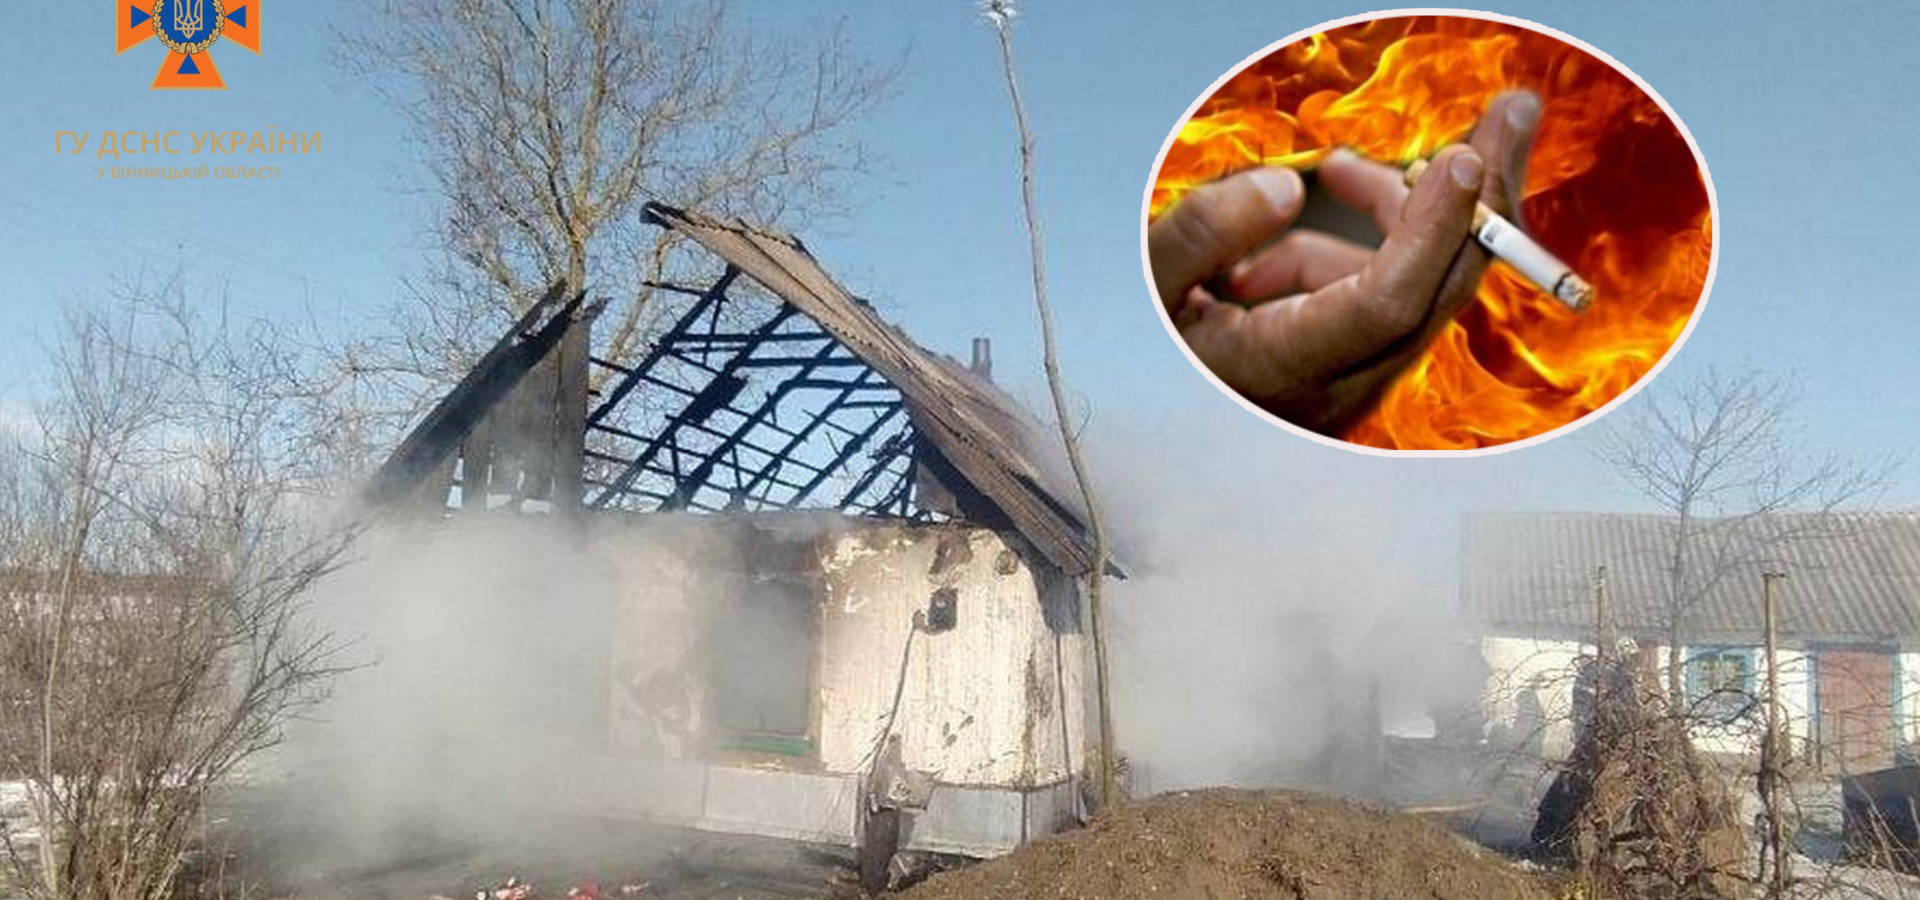 Курив у будинку: у селі Хмільницького району спалахнула пожежа